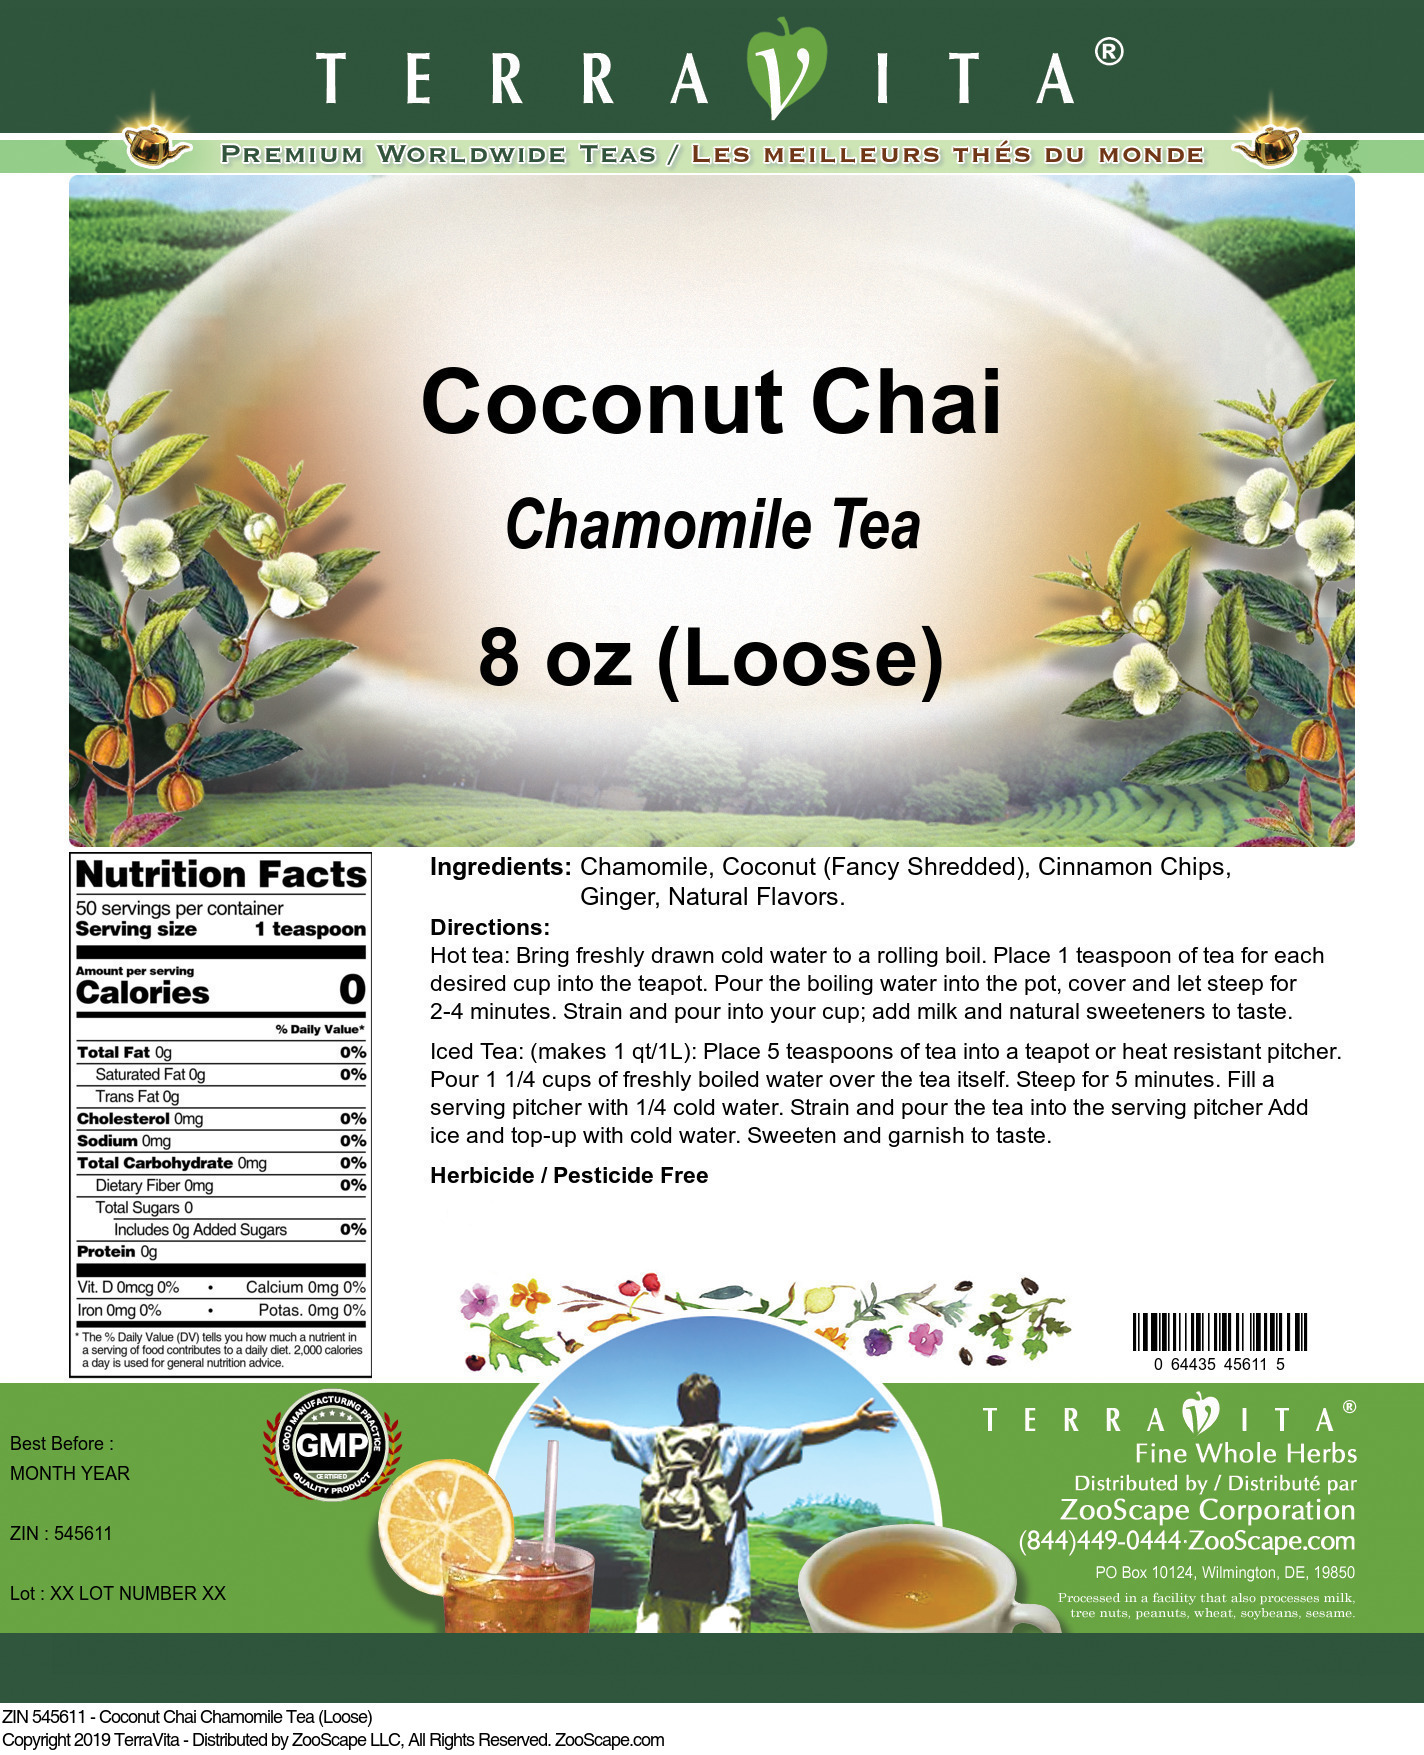 Coconut Chai Chamomile Tea (Loose) - Label